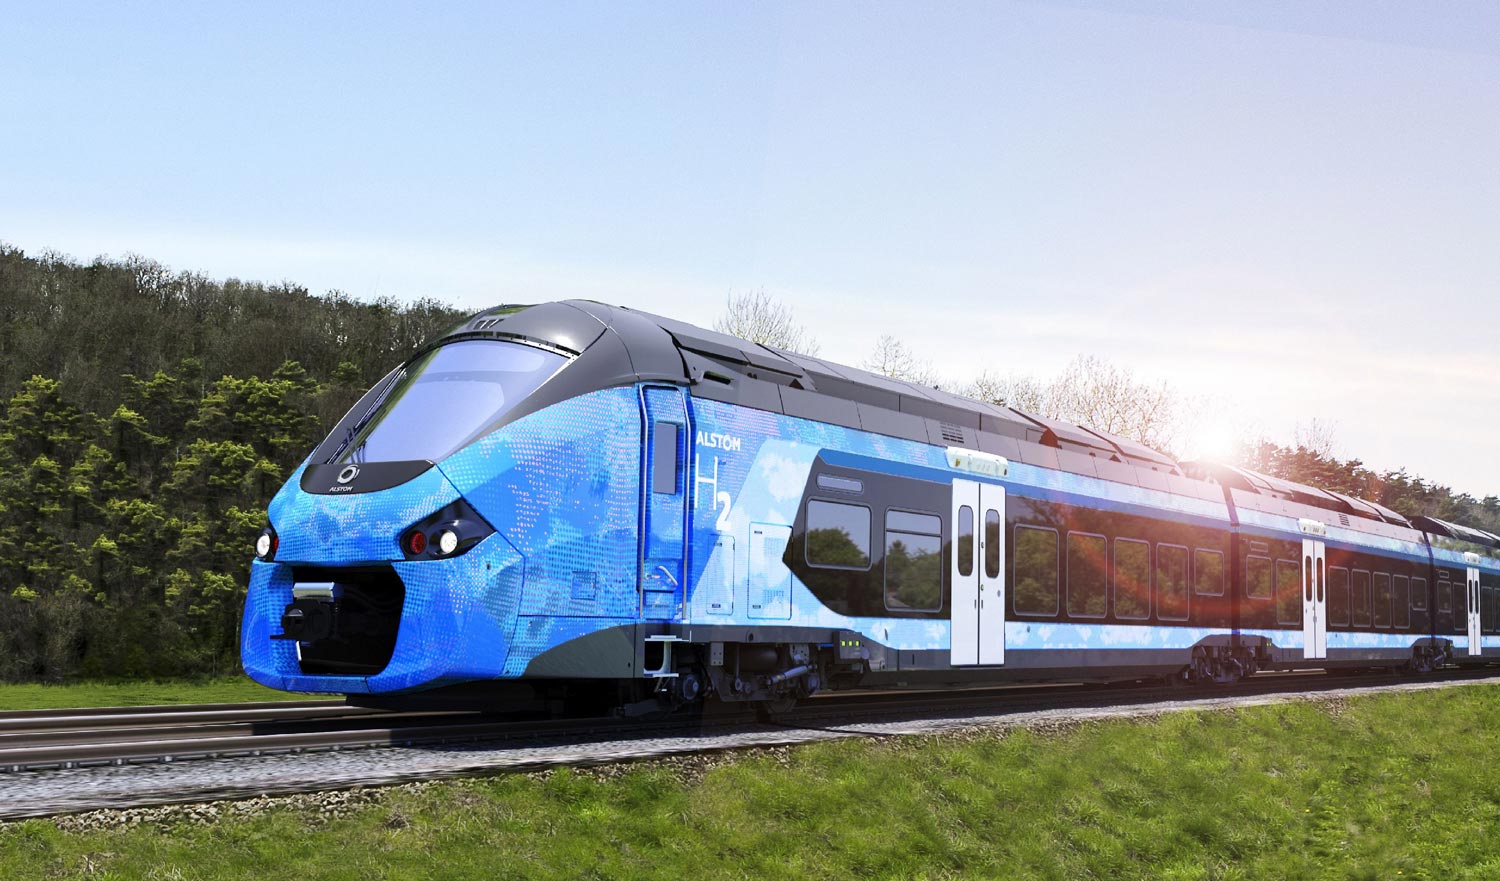 Les géants français Plastic Omnium et Alstom s'associent pour développer le train à hydrogène